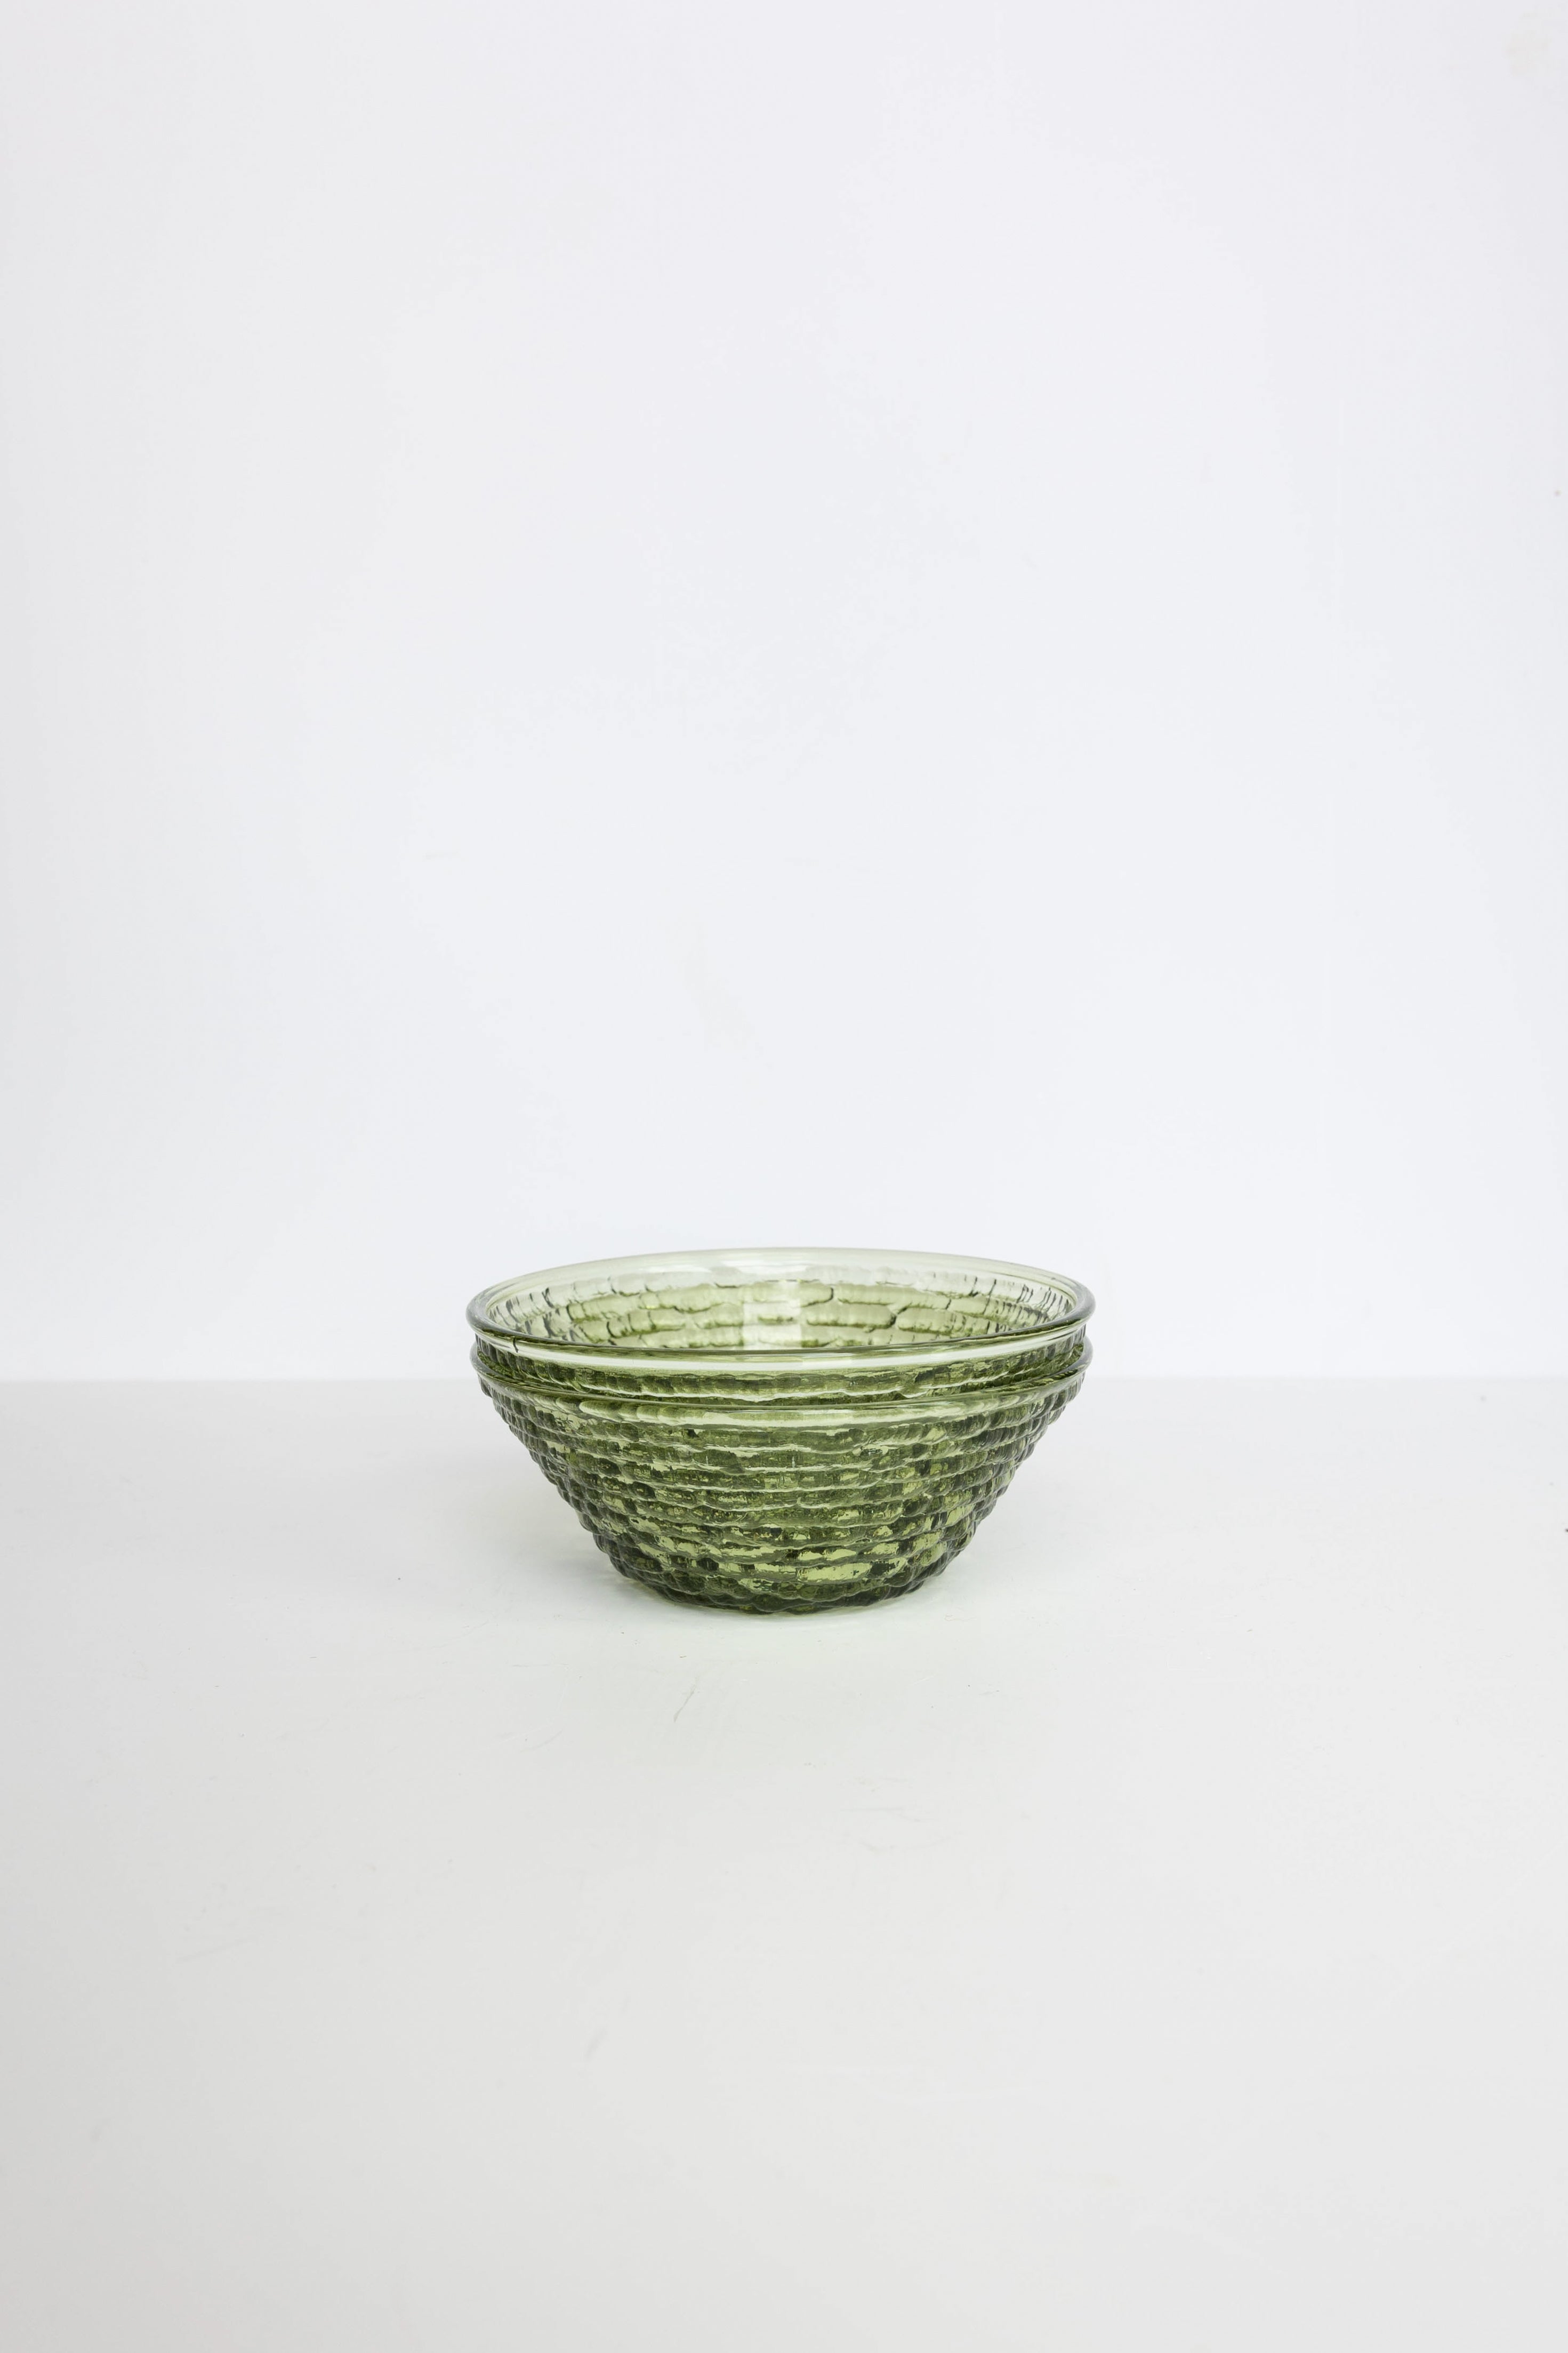 Vintage Green Glass Dessert Bowls - Set of 2